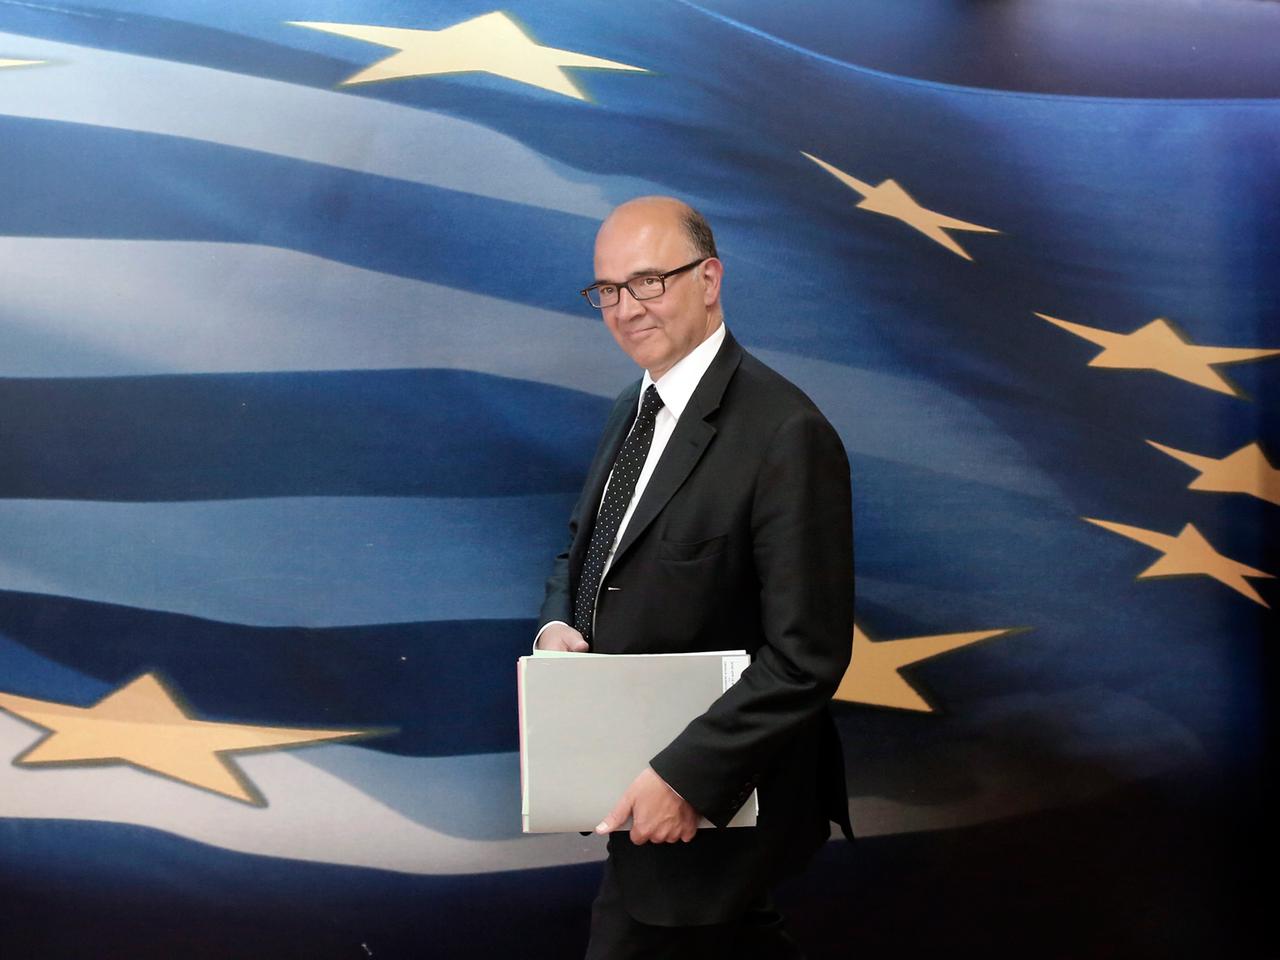 Frankreichs ehemaliger Finanzminister und Kandidat für die EU-Kommission Pierre Moscovici, geht vor einer großen blauen EU-Flagge mit gelben Sternen und weißen Streifen entlang